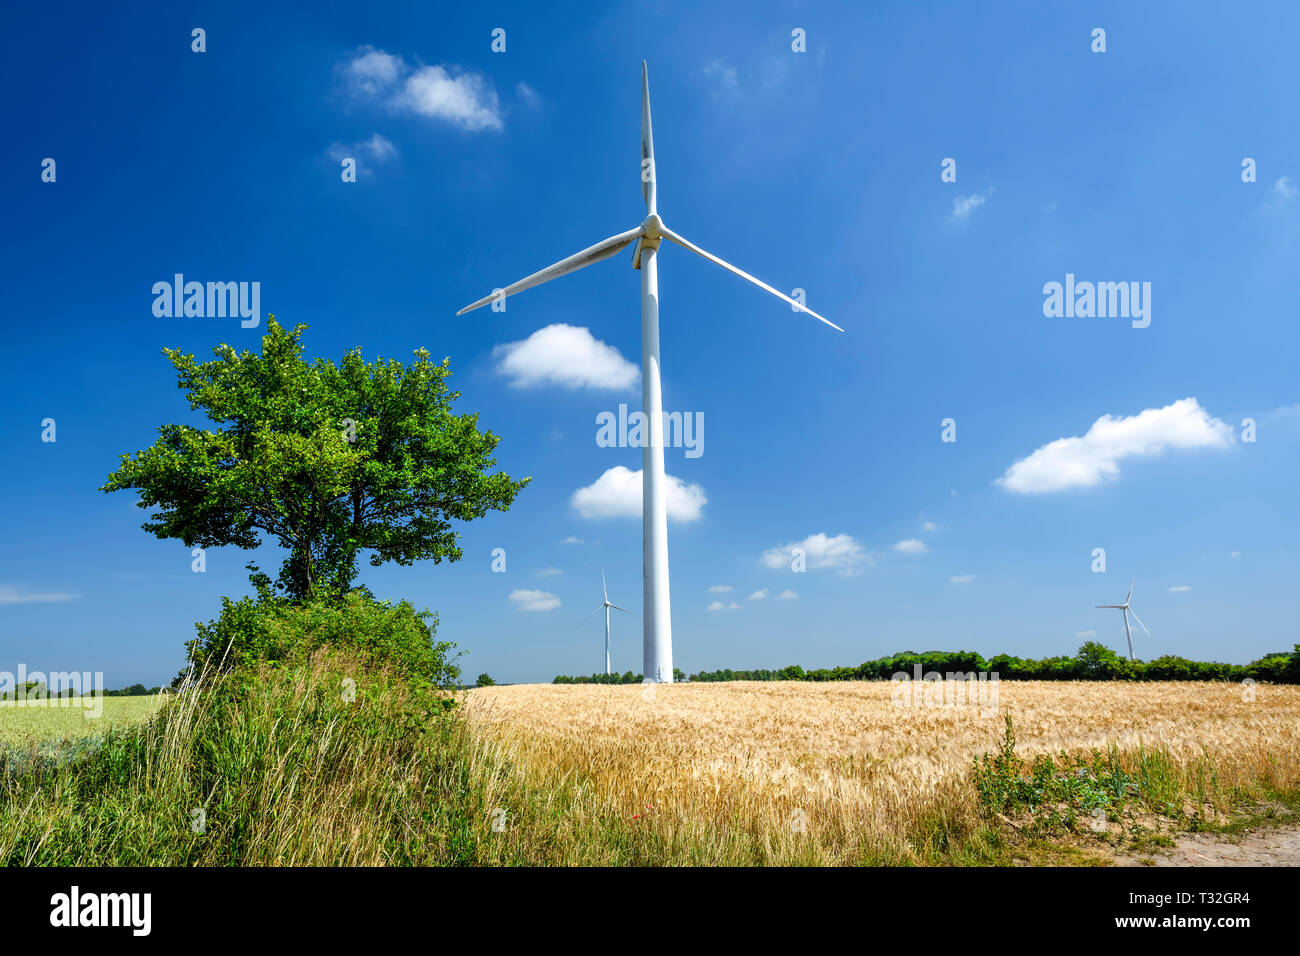 Turbina eolica nel comune di Scharbeutz NEL LAND SCHLESWIG-HOLSTEIN, Germania, Europa Windrad in der Gemeinde Scharbeutz in Schleswig-Holstein, DEU Foto Stock